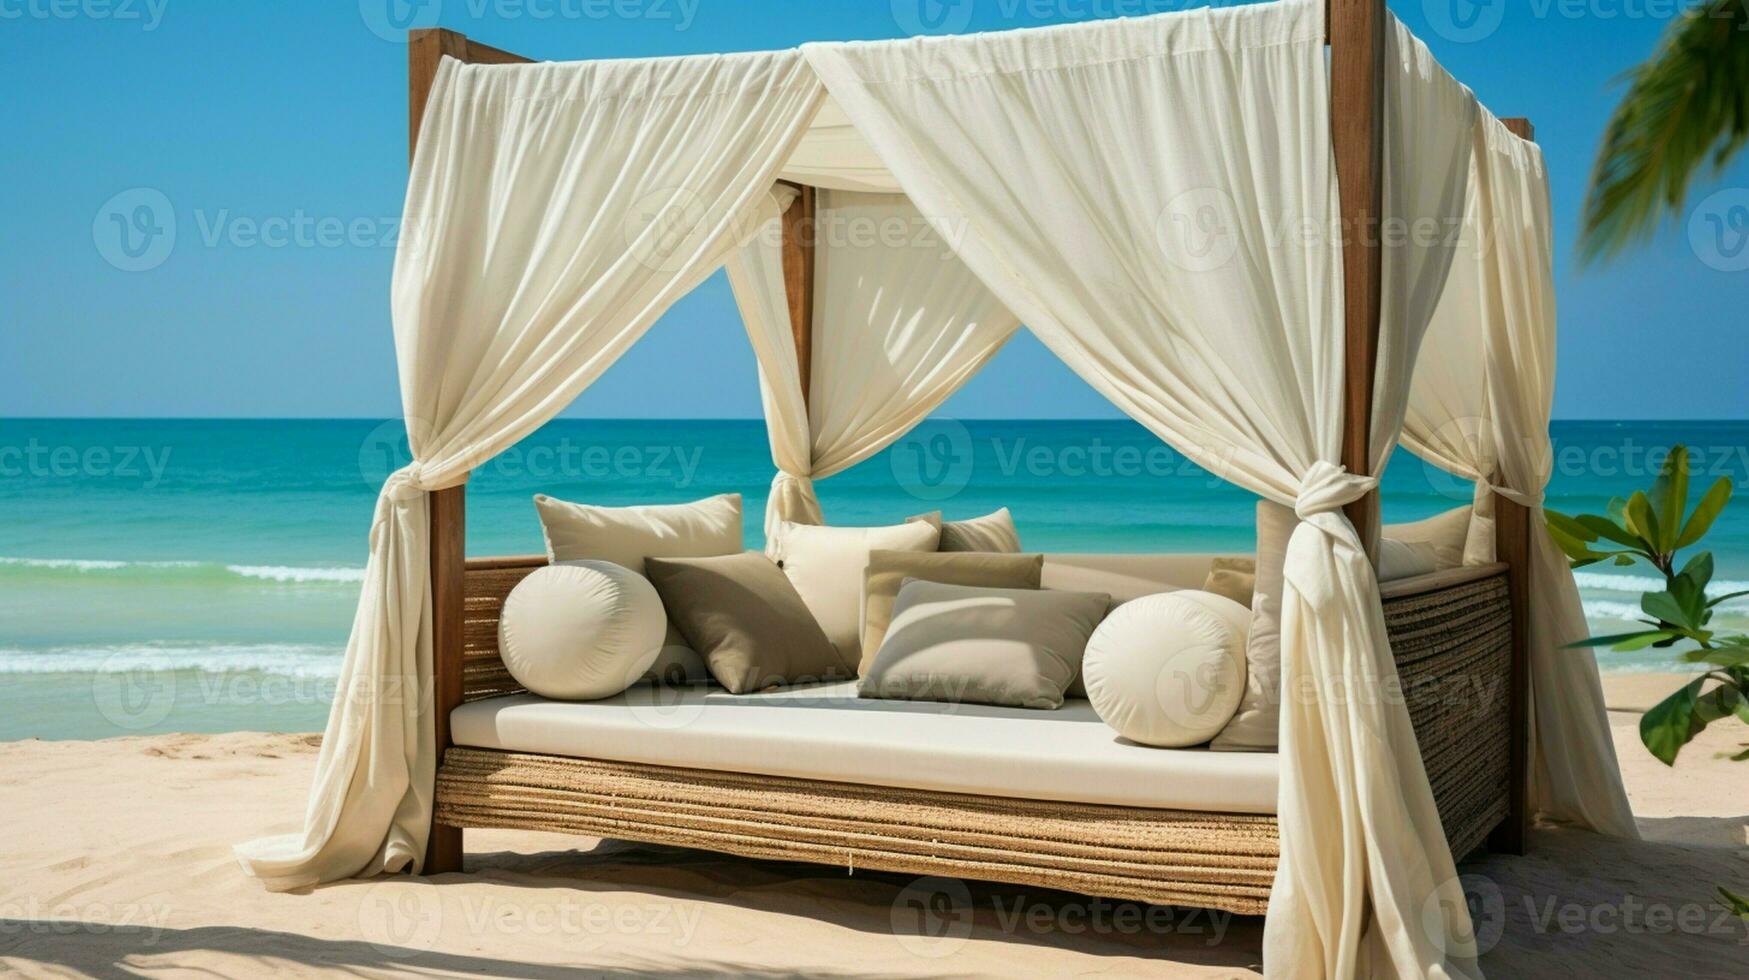 koppla av på en bekväm vardagsrum säng med tak på de skön tropisk strand landskap. foto